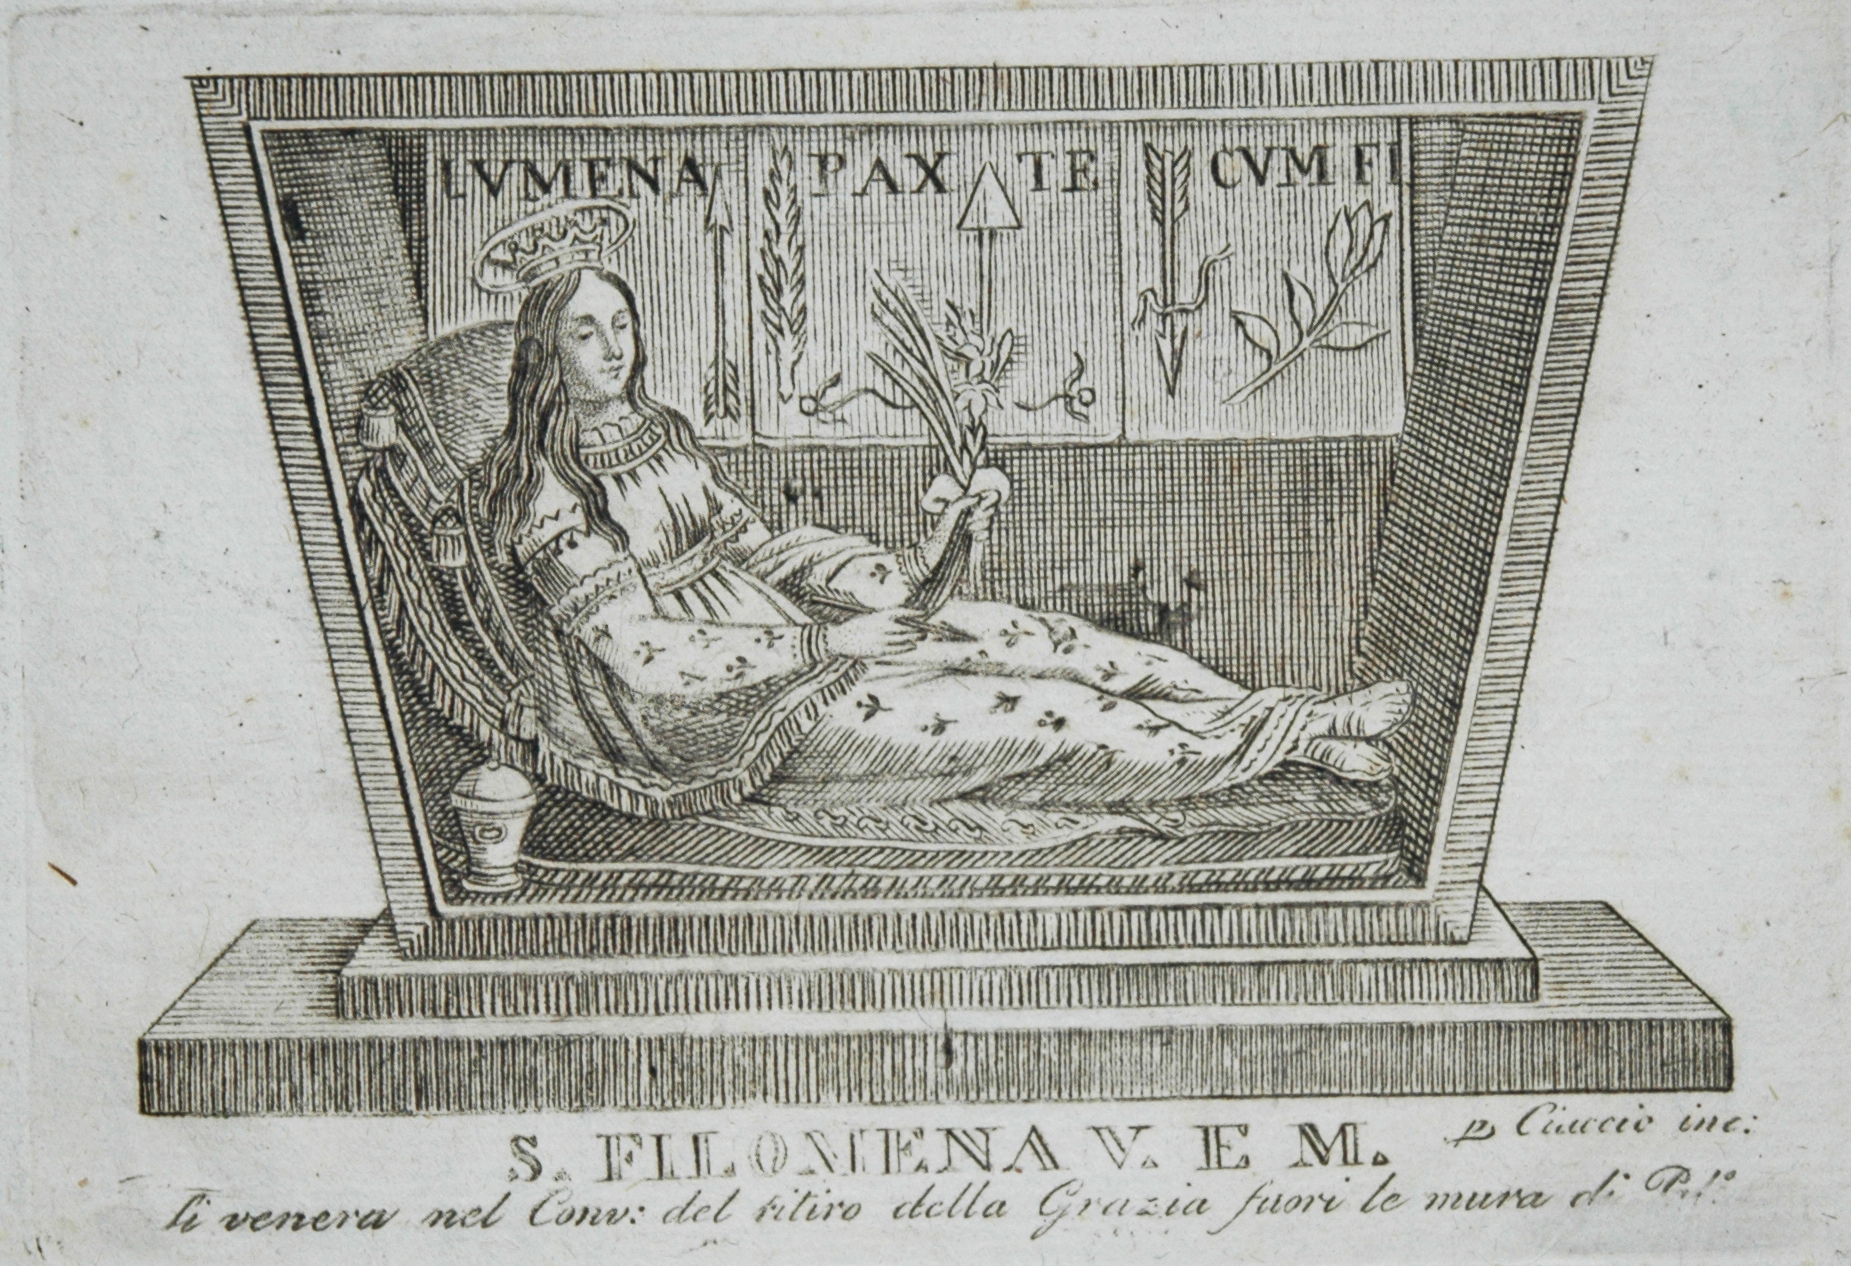 Santa Filomena, incisione all’acquaforte di Ciaccio incisore, prima metà XIX secolo, 2017, fotografia digitale